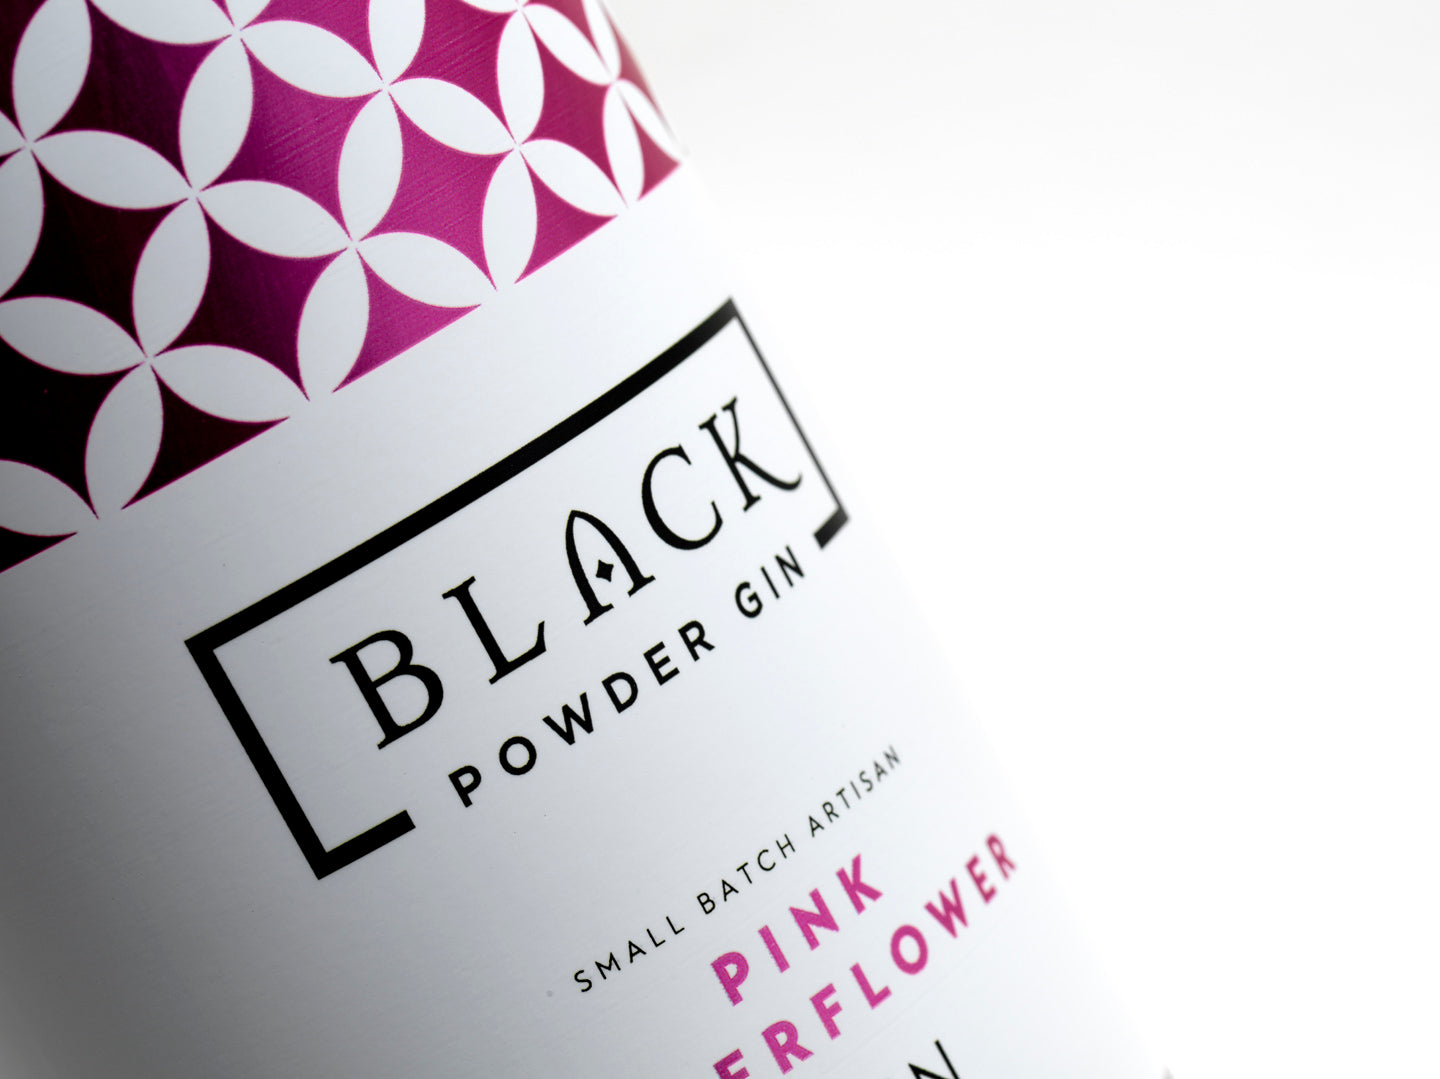 Pink Elderflower Gin 70cl / 37.5%abv